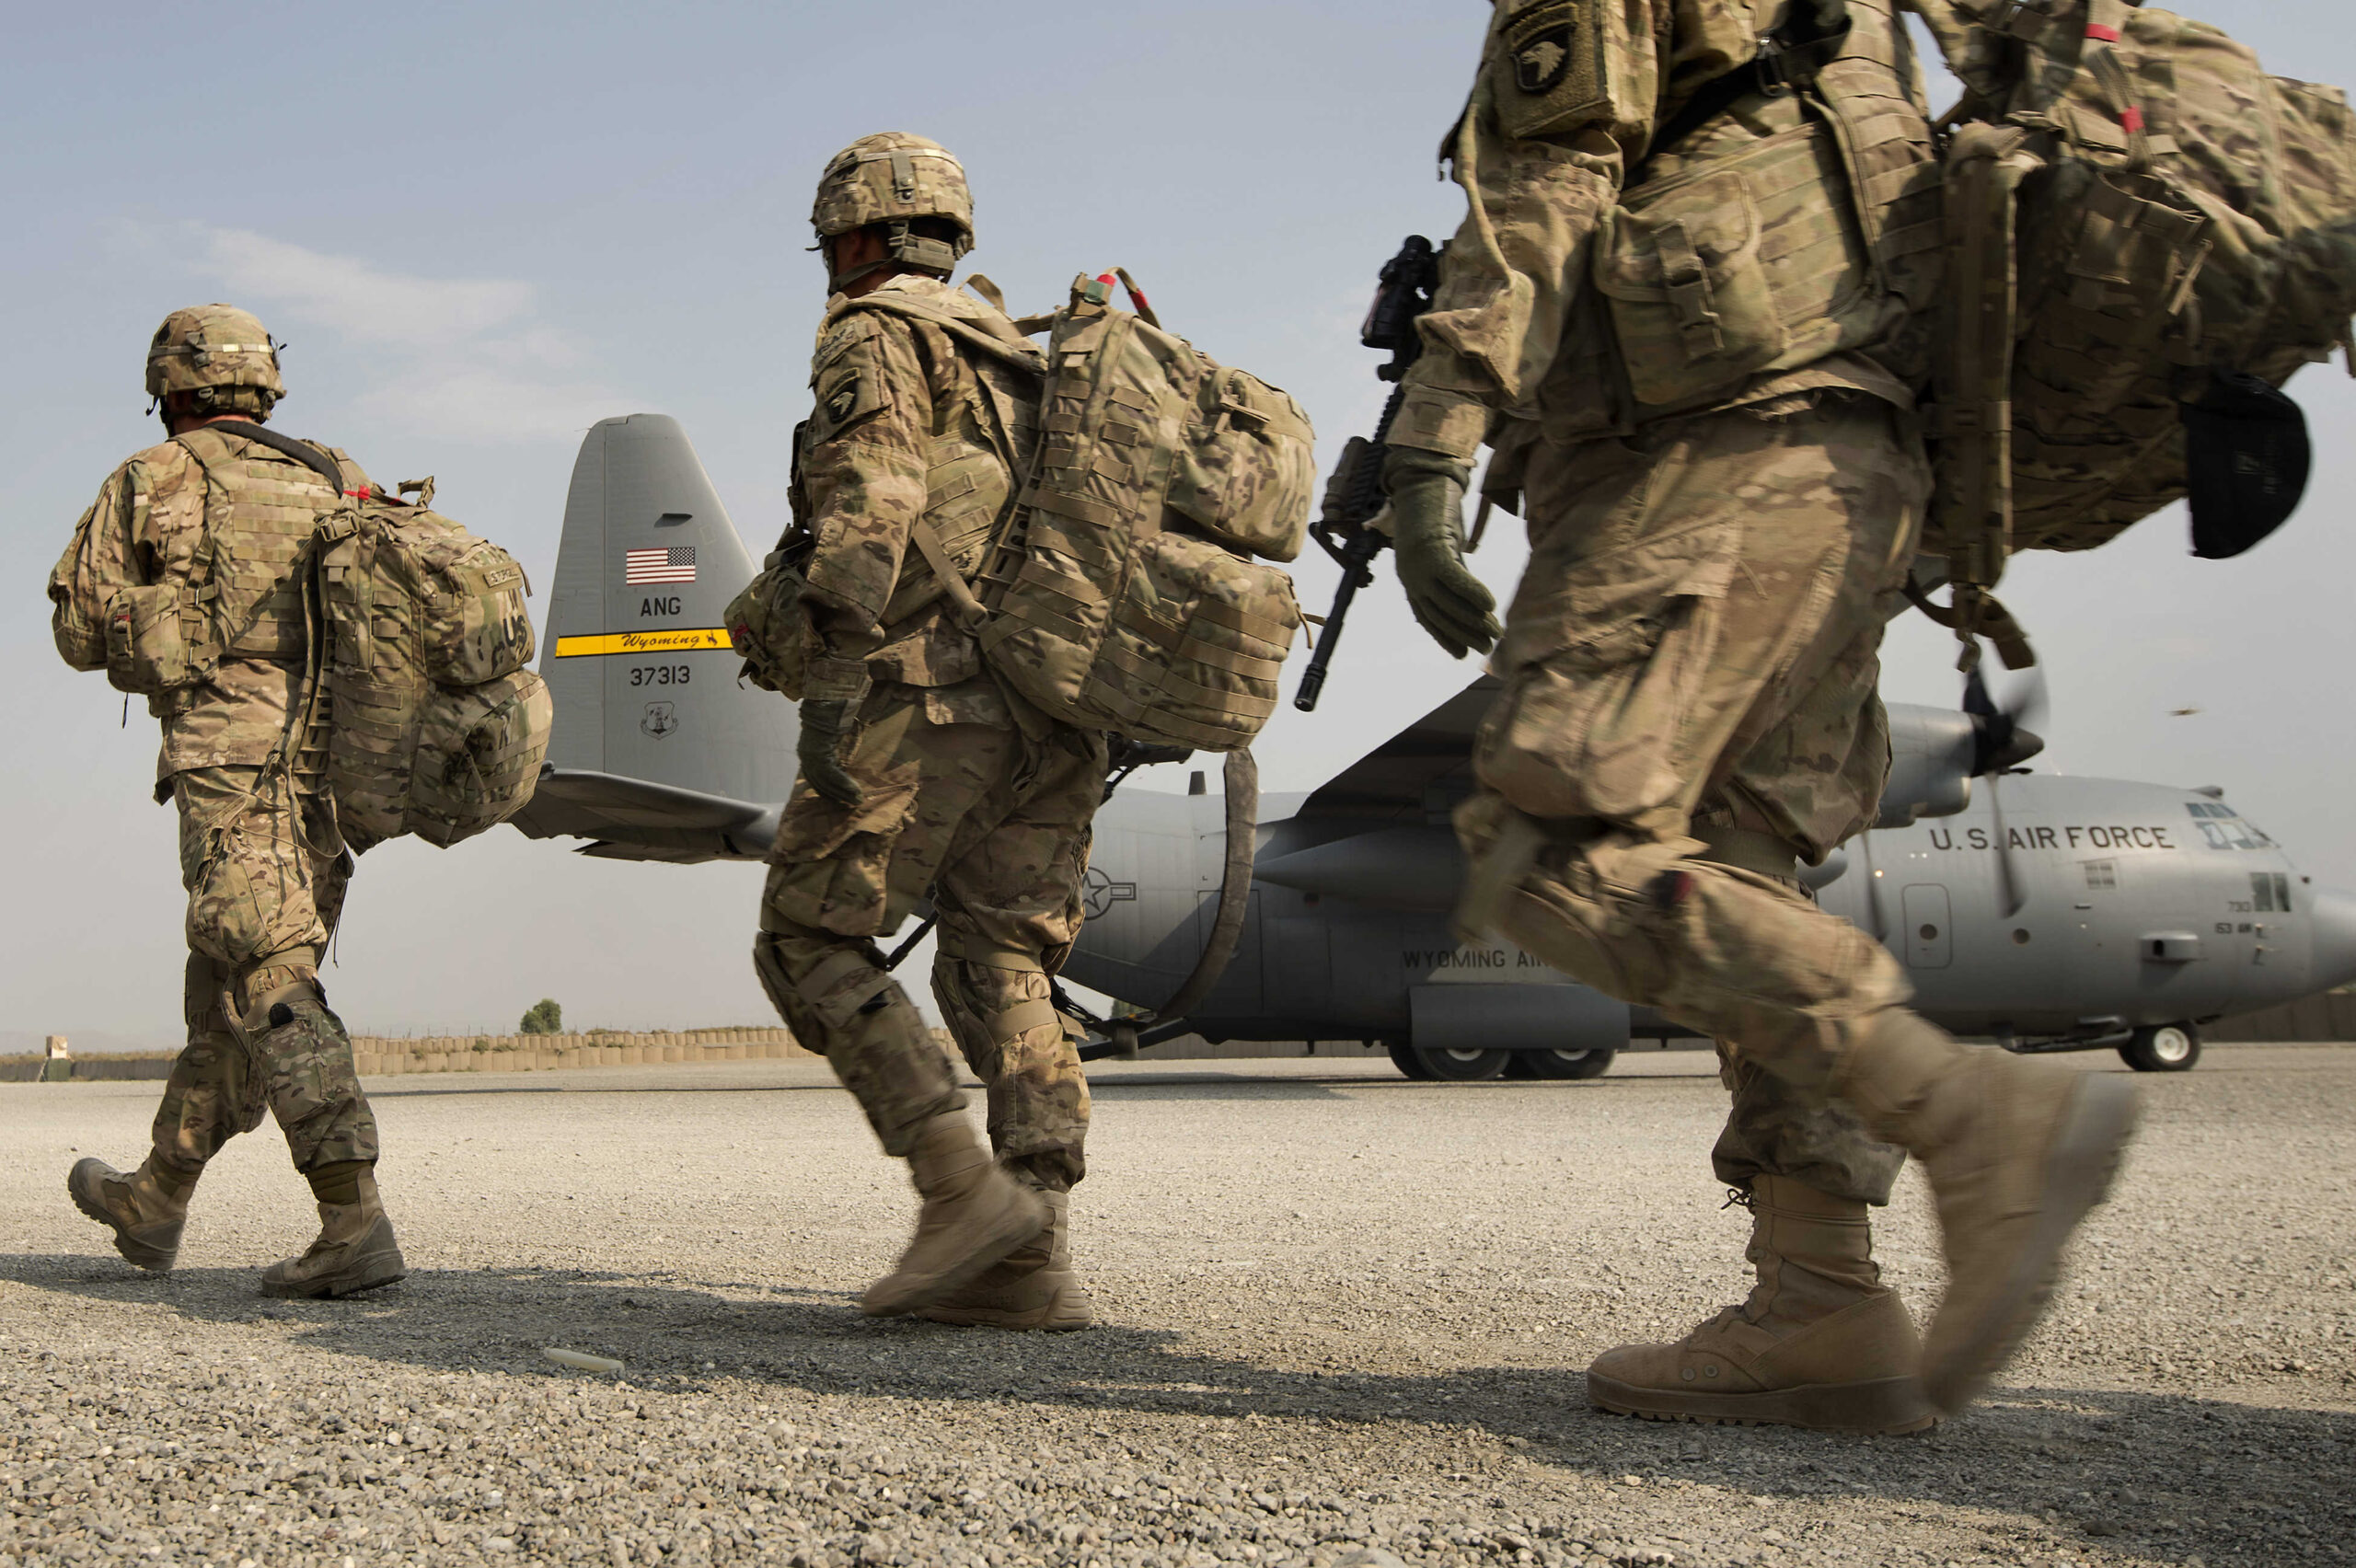 الجيش الأمريكي يغلق قواعد عسكرية في قطر وينقل معداته وجنوده إلى الأردن